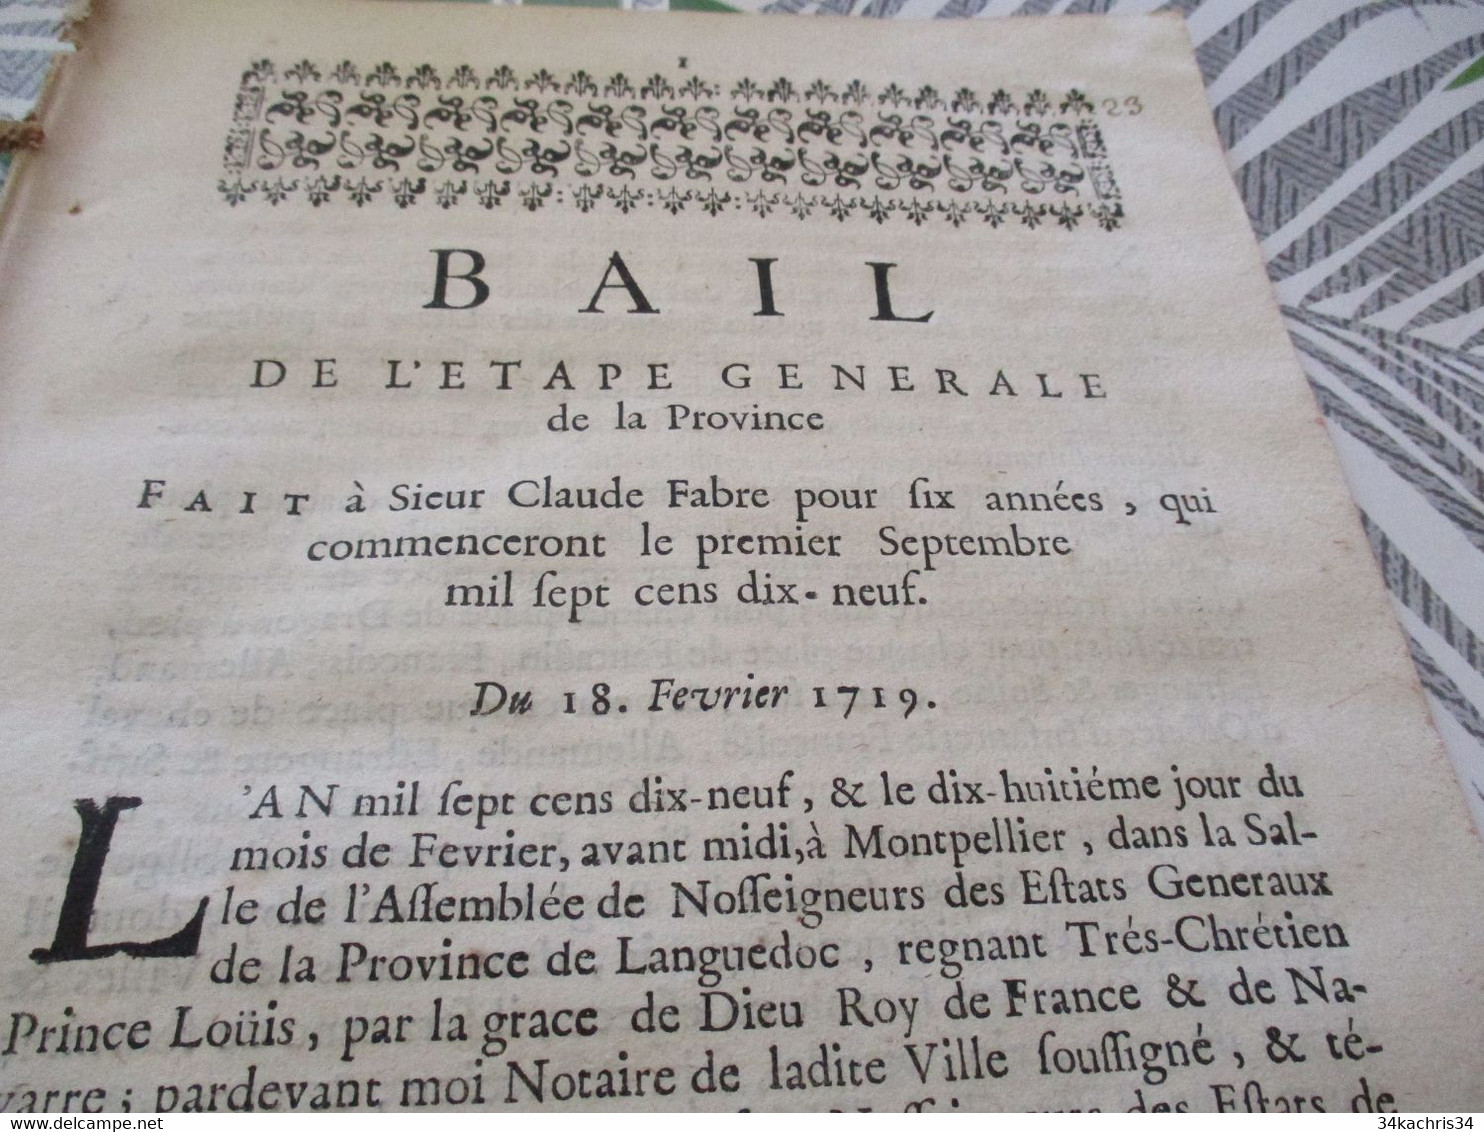 Bail De L'Etape Générale Fait à Sieur Claude Fabre 18/02/1719 Militaire Montpellier - Gesetze & Erlasse